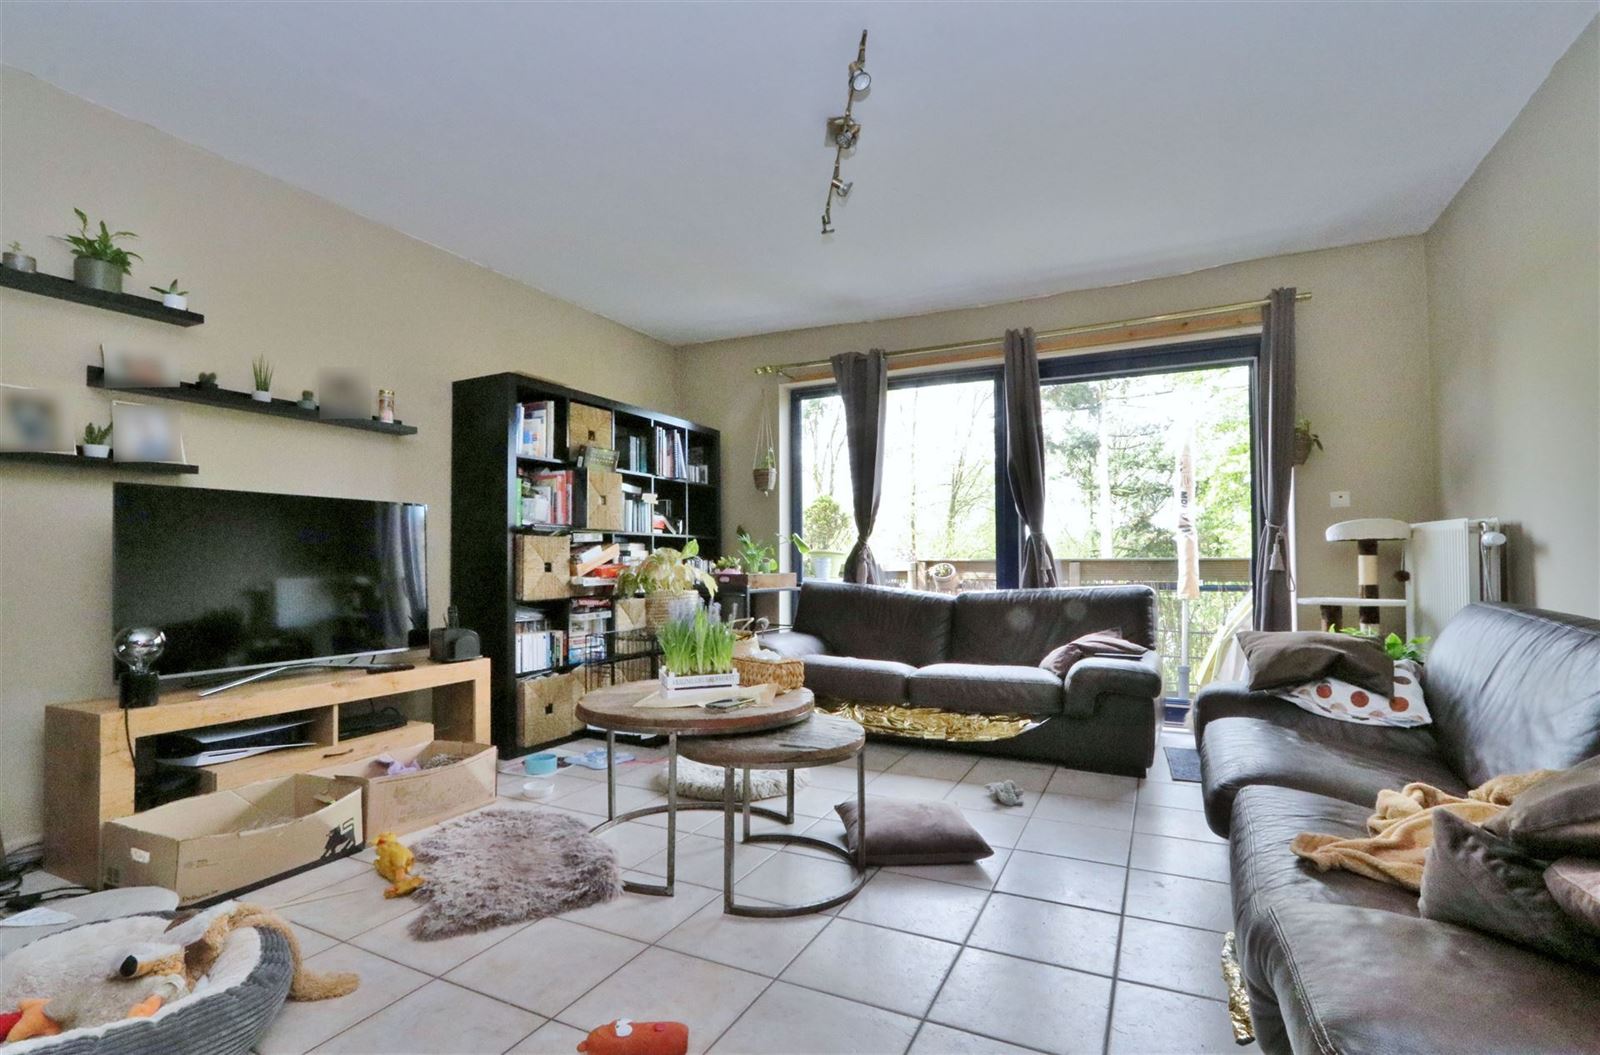 Duplex appartement met 3 slaapkamers, terras + garage te Sint-Genesius-Rode foto 6